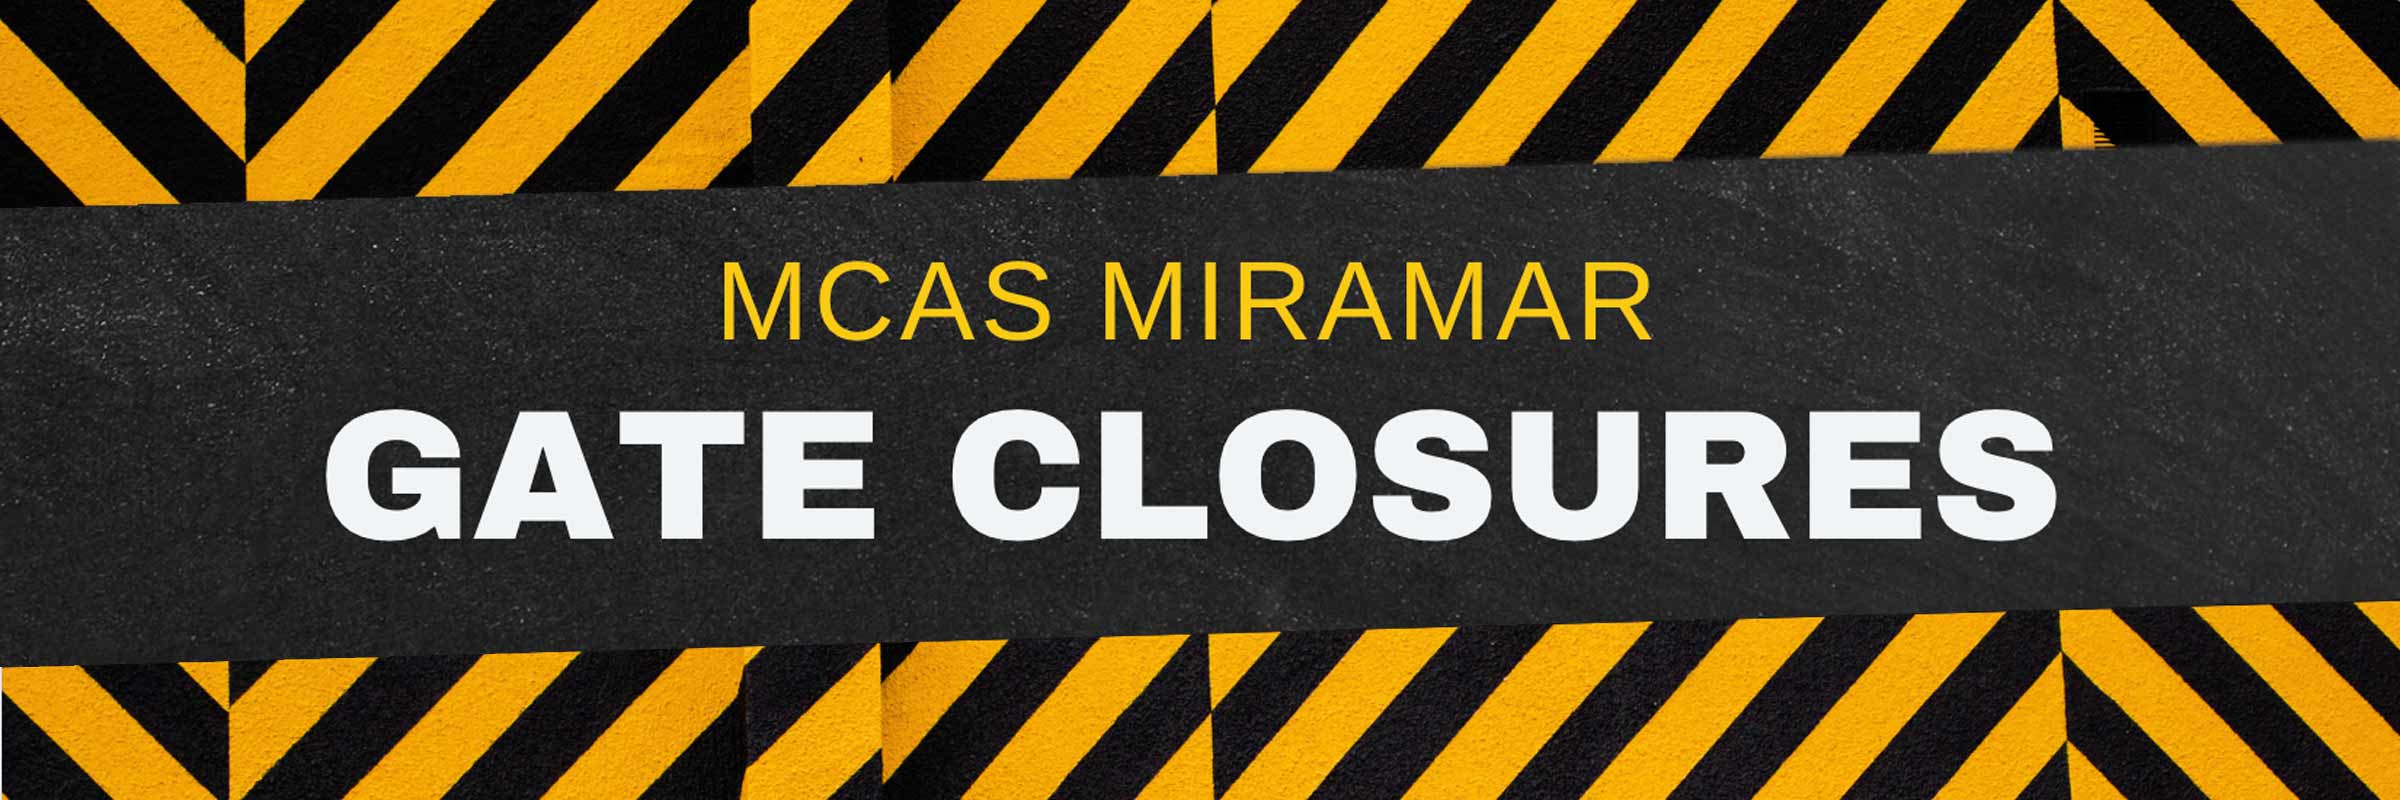 MCAS Miramar Gate Closures